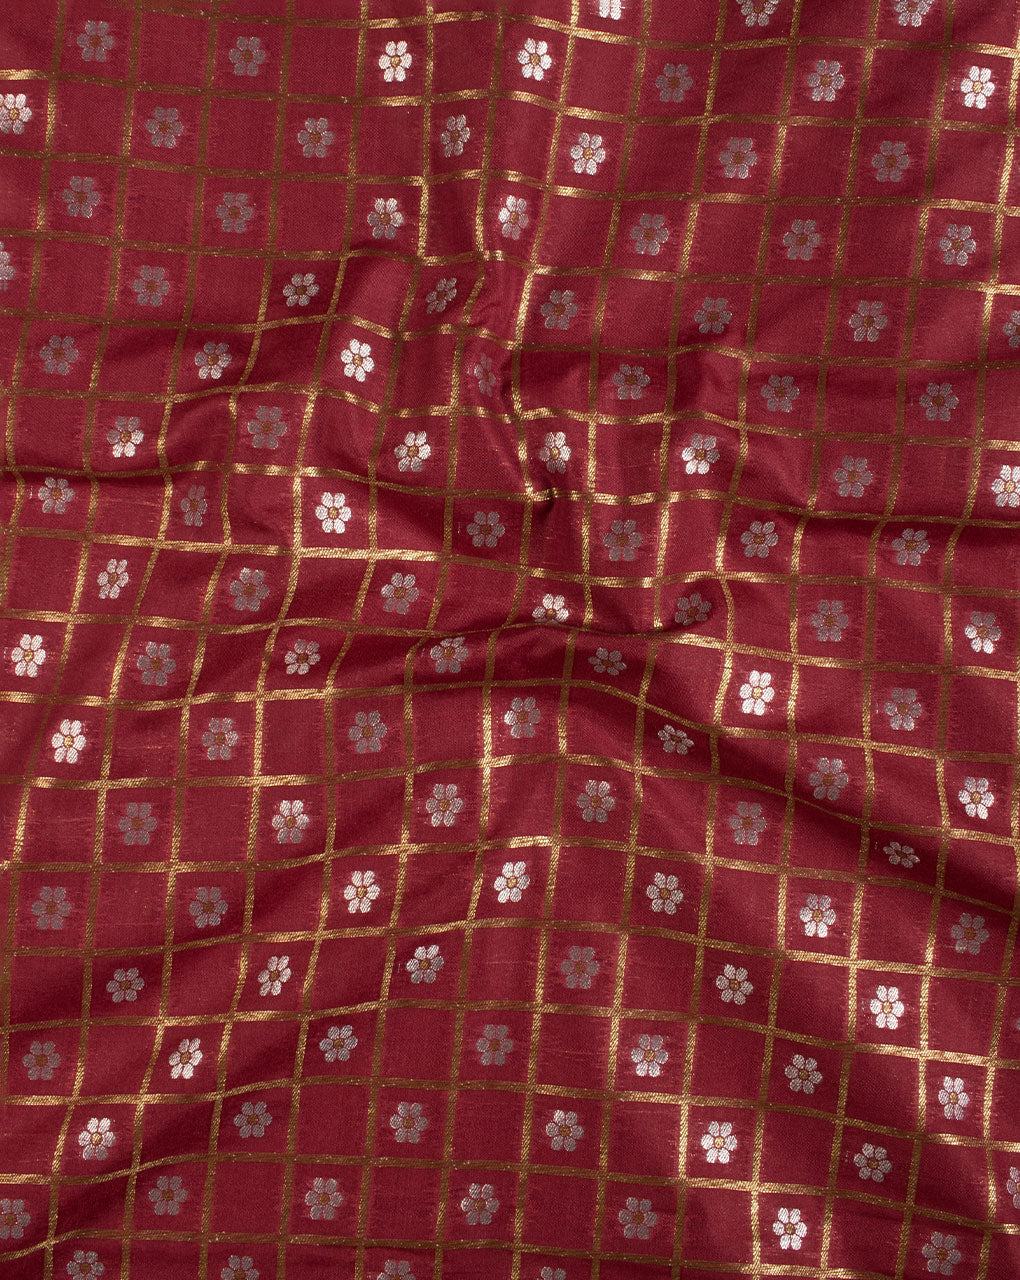 Floral Zari Jacquard Banarasi Taffeta Silk Fabric - Fabriclore.com